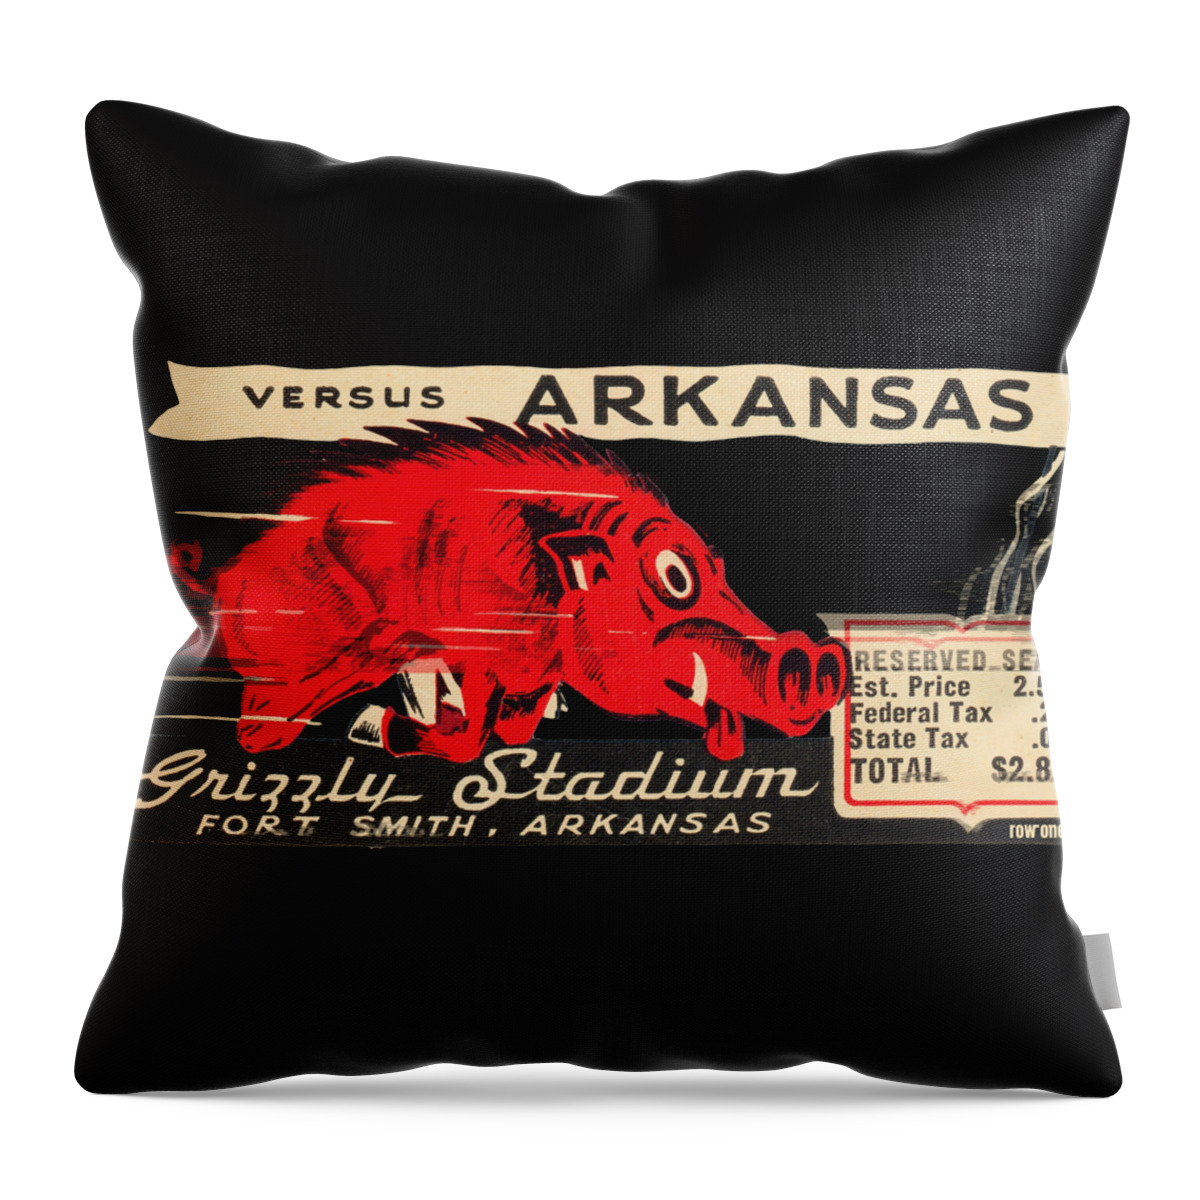 Arkansas Throw Pillow featuring the mixed media 1943 Arkansas vs. Oklahoma AM by Row One Brand